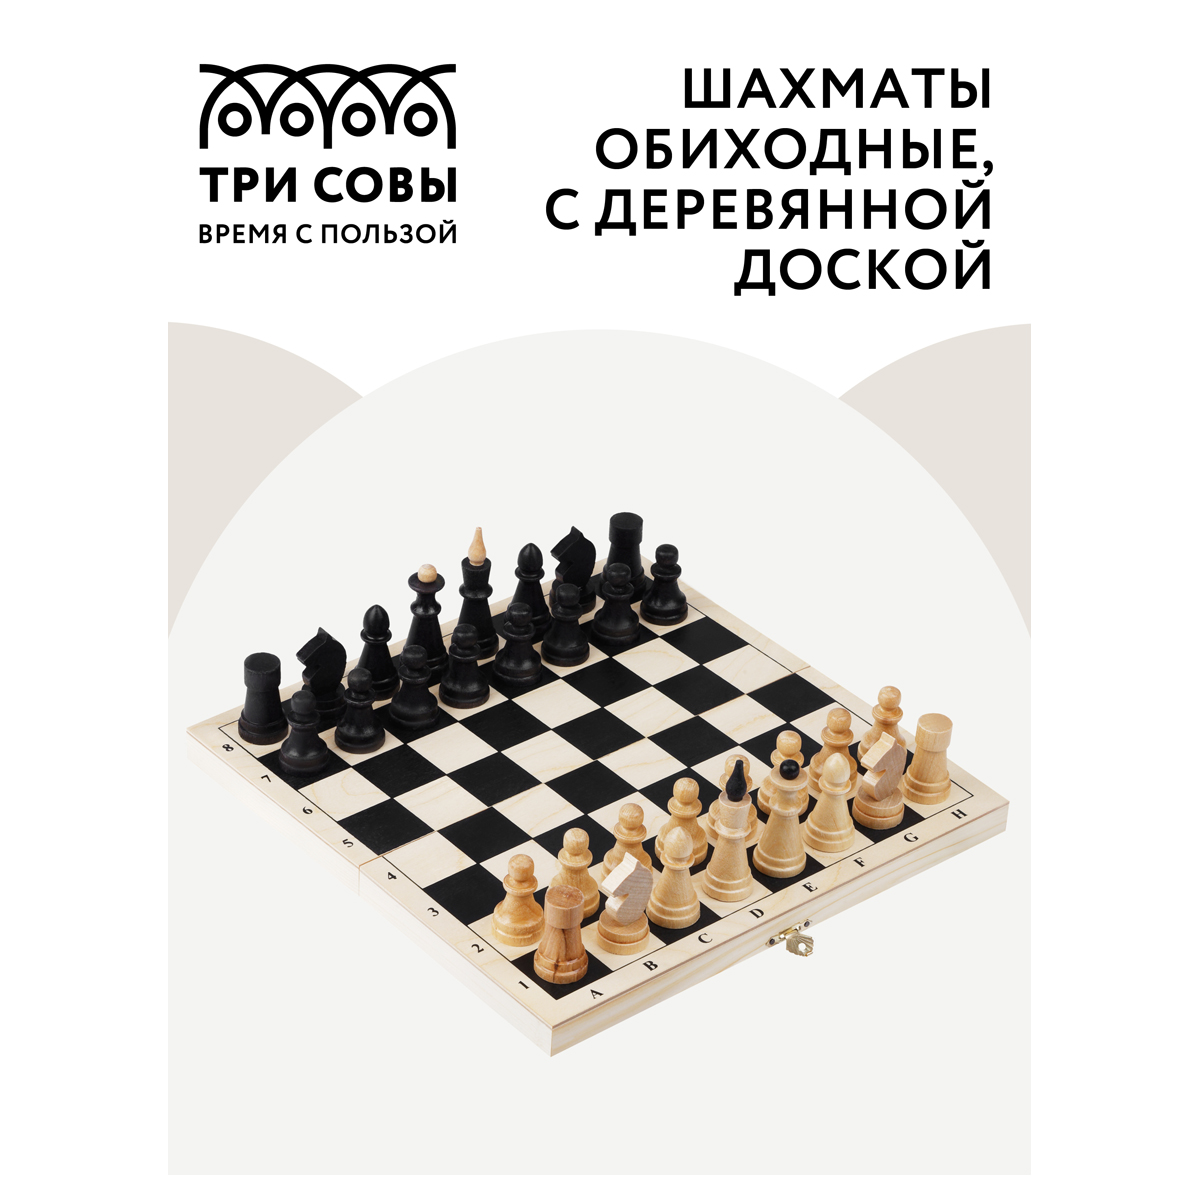 Шахматы ТРИ СОВЫ обиходные, деревянные с деревянной доской 29*29 см ТС-НИ_46630 - фото 2